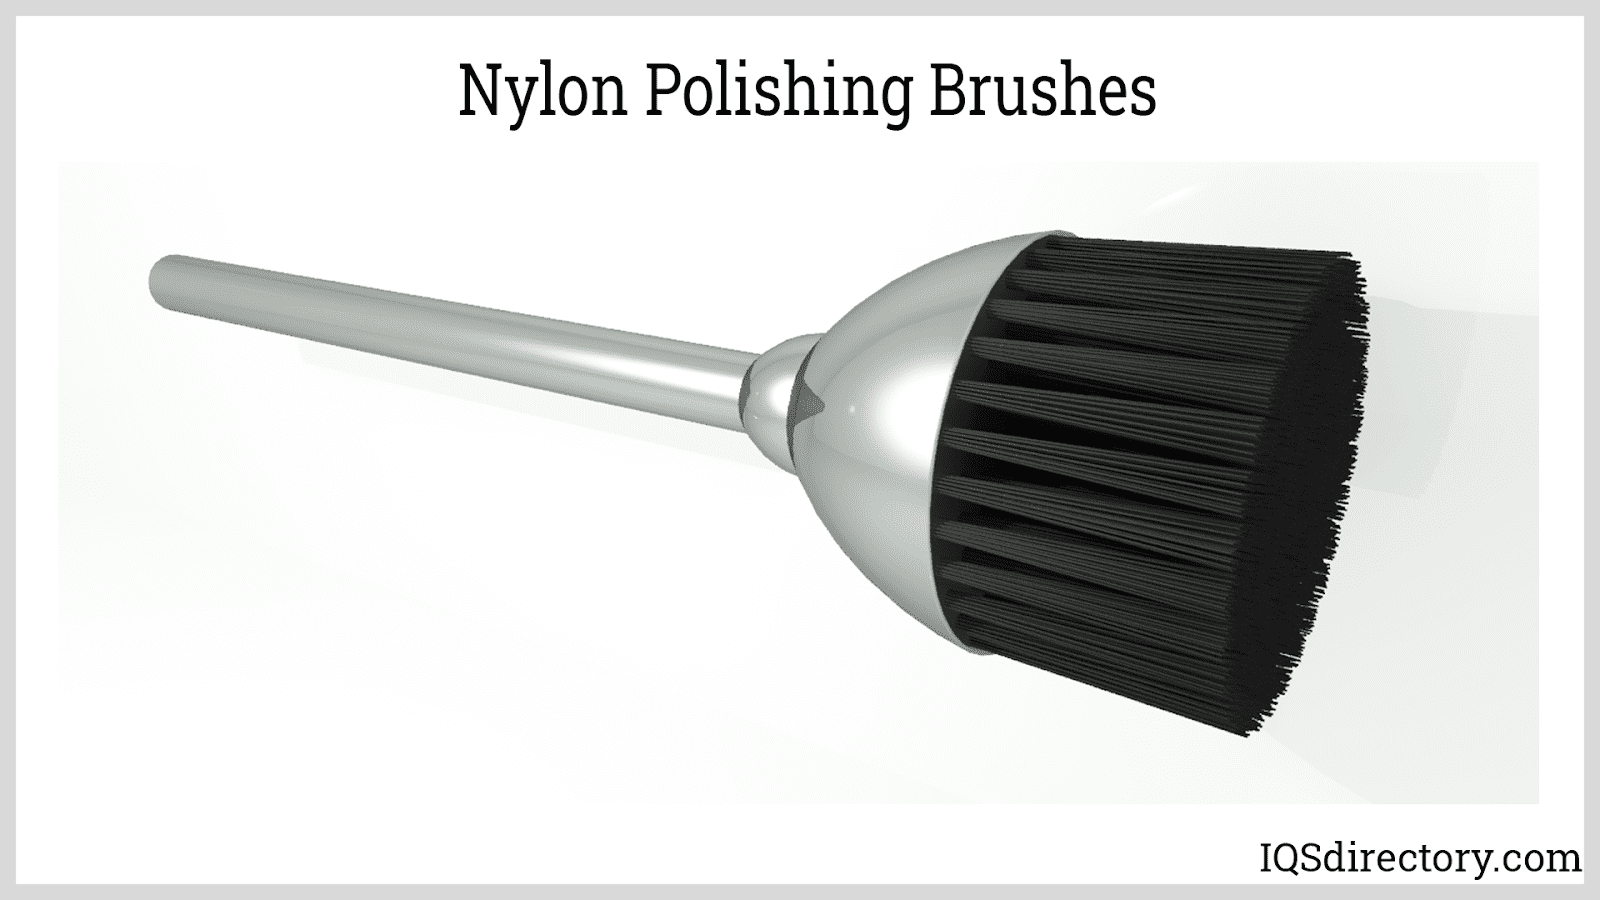 Nylon Polishing Brushes